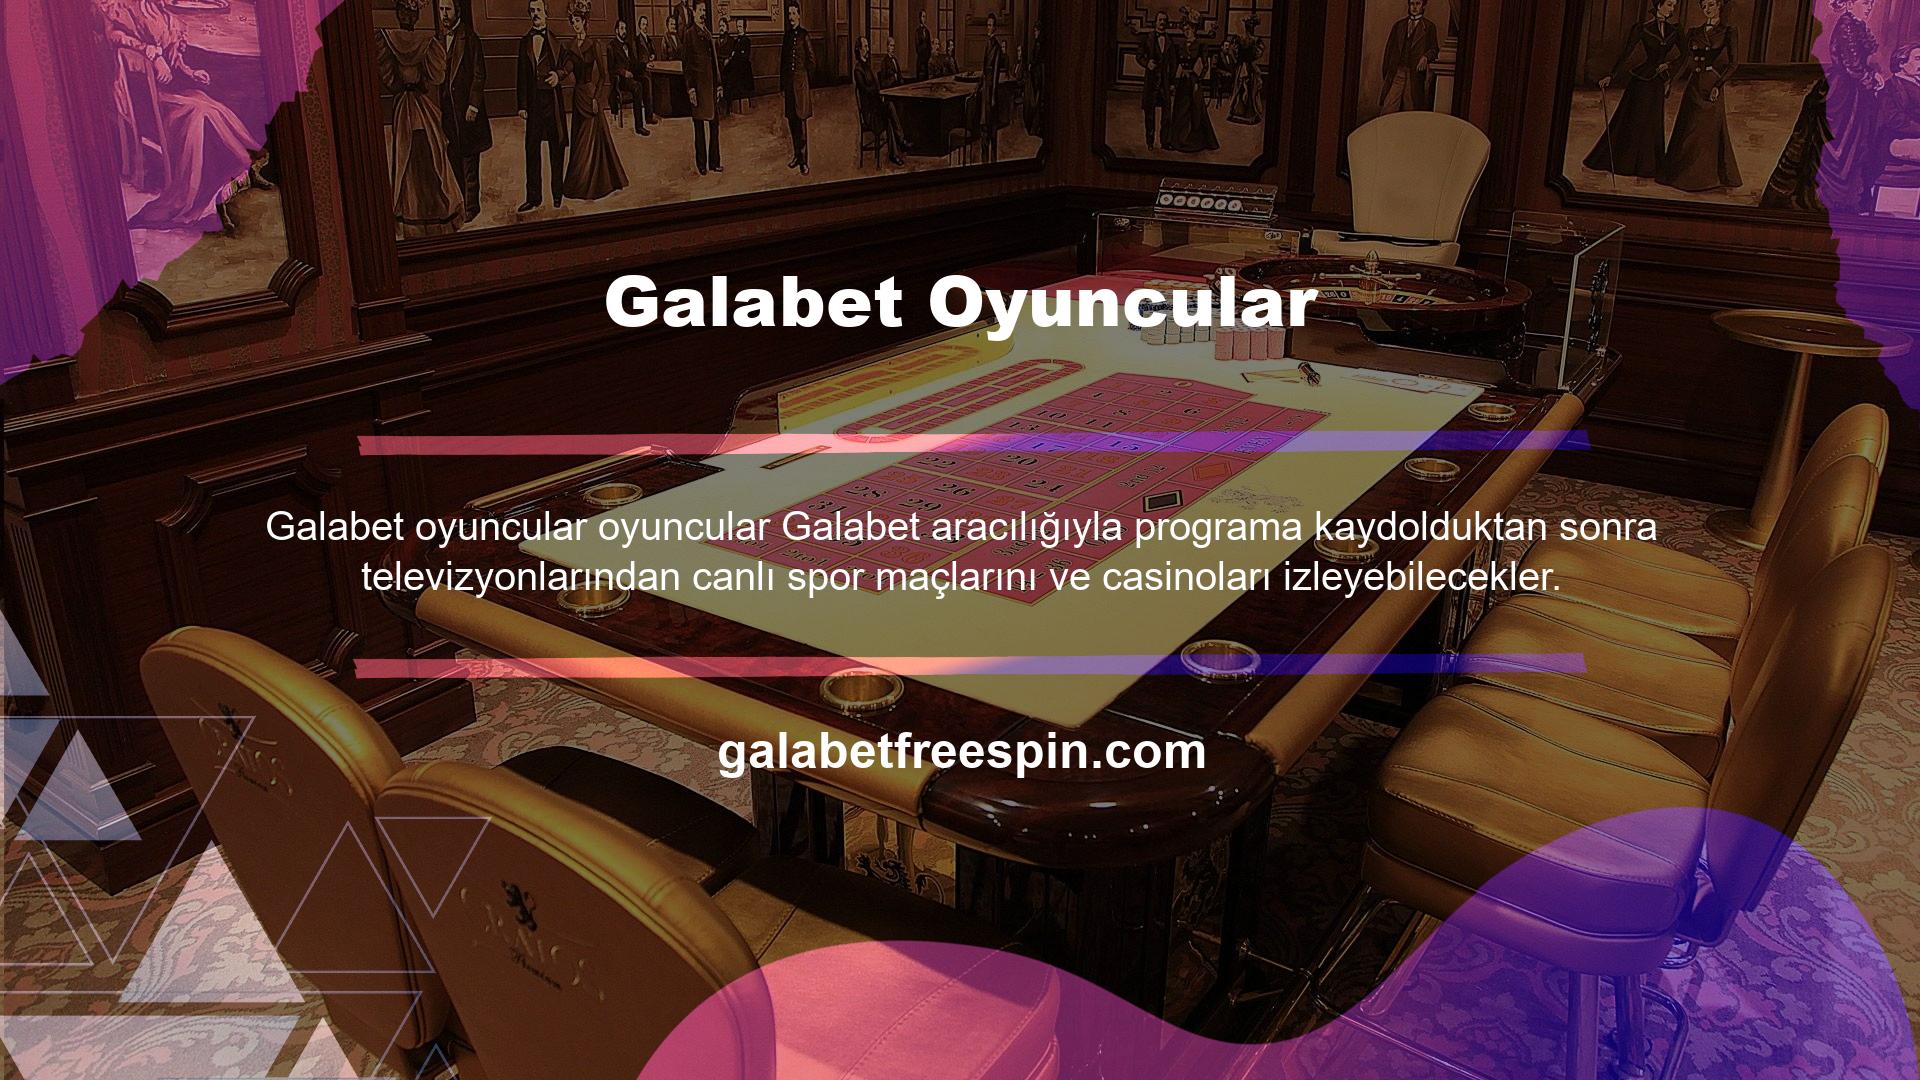 Kullanıcılar Galabet web sitesinde kullanıcı adı ve şifrelerini girerek TV işlevselliğini tam olarak aktif hale getirebilirler